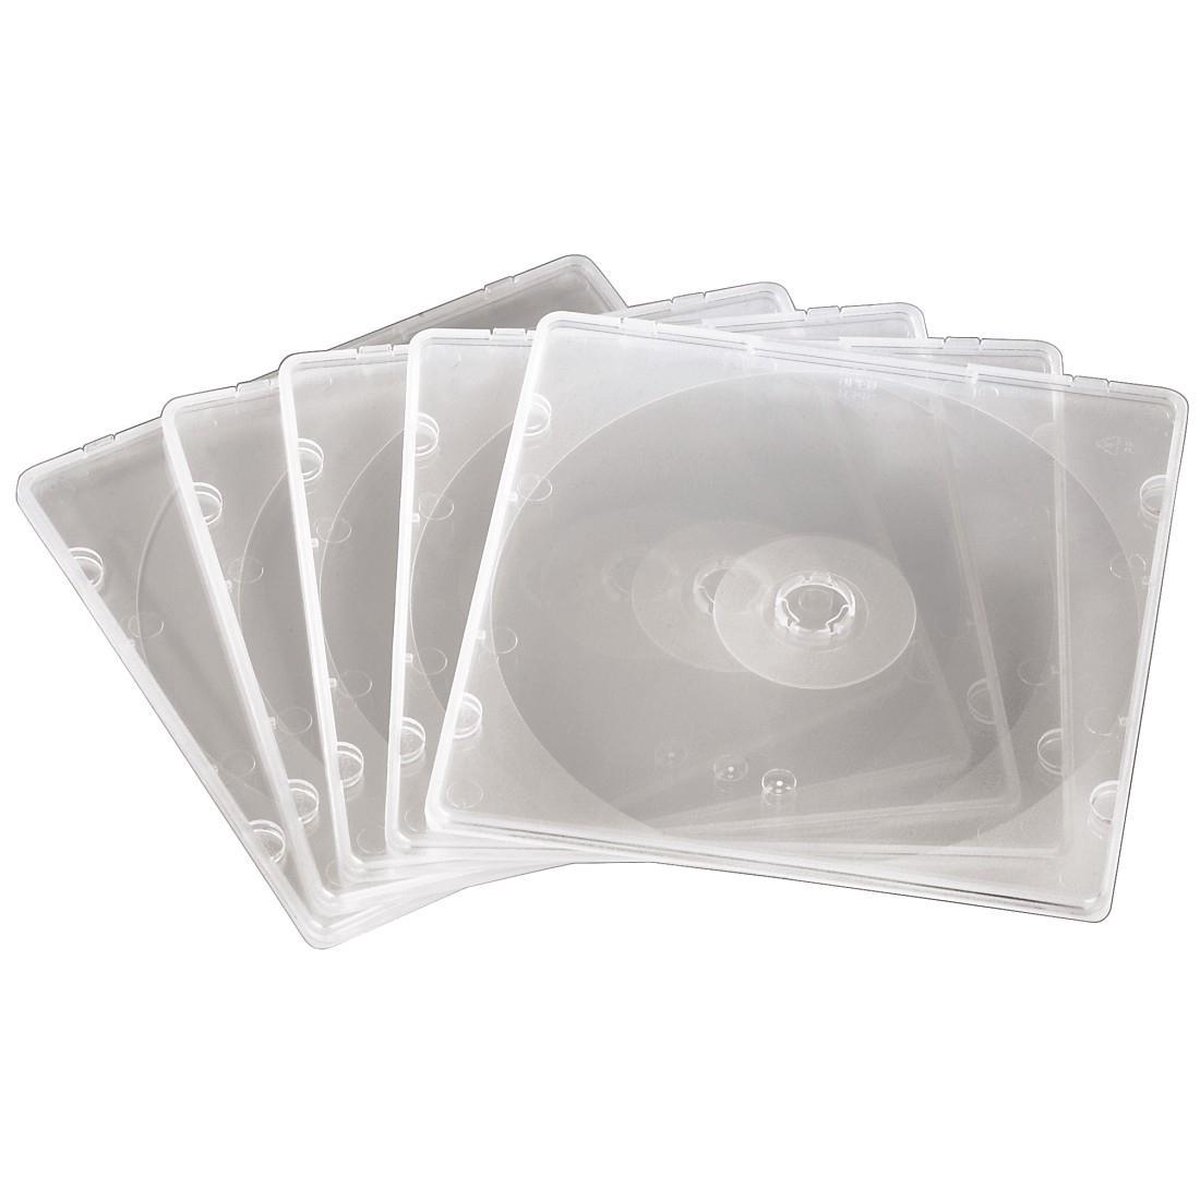 Hama CD slim box PP 20-pack transparant